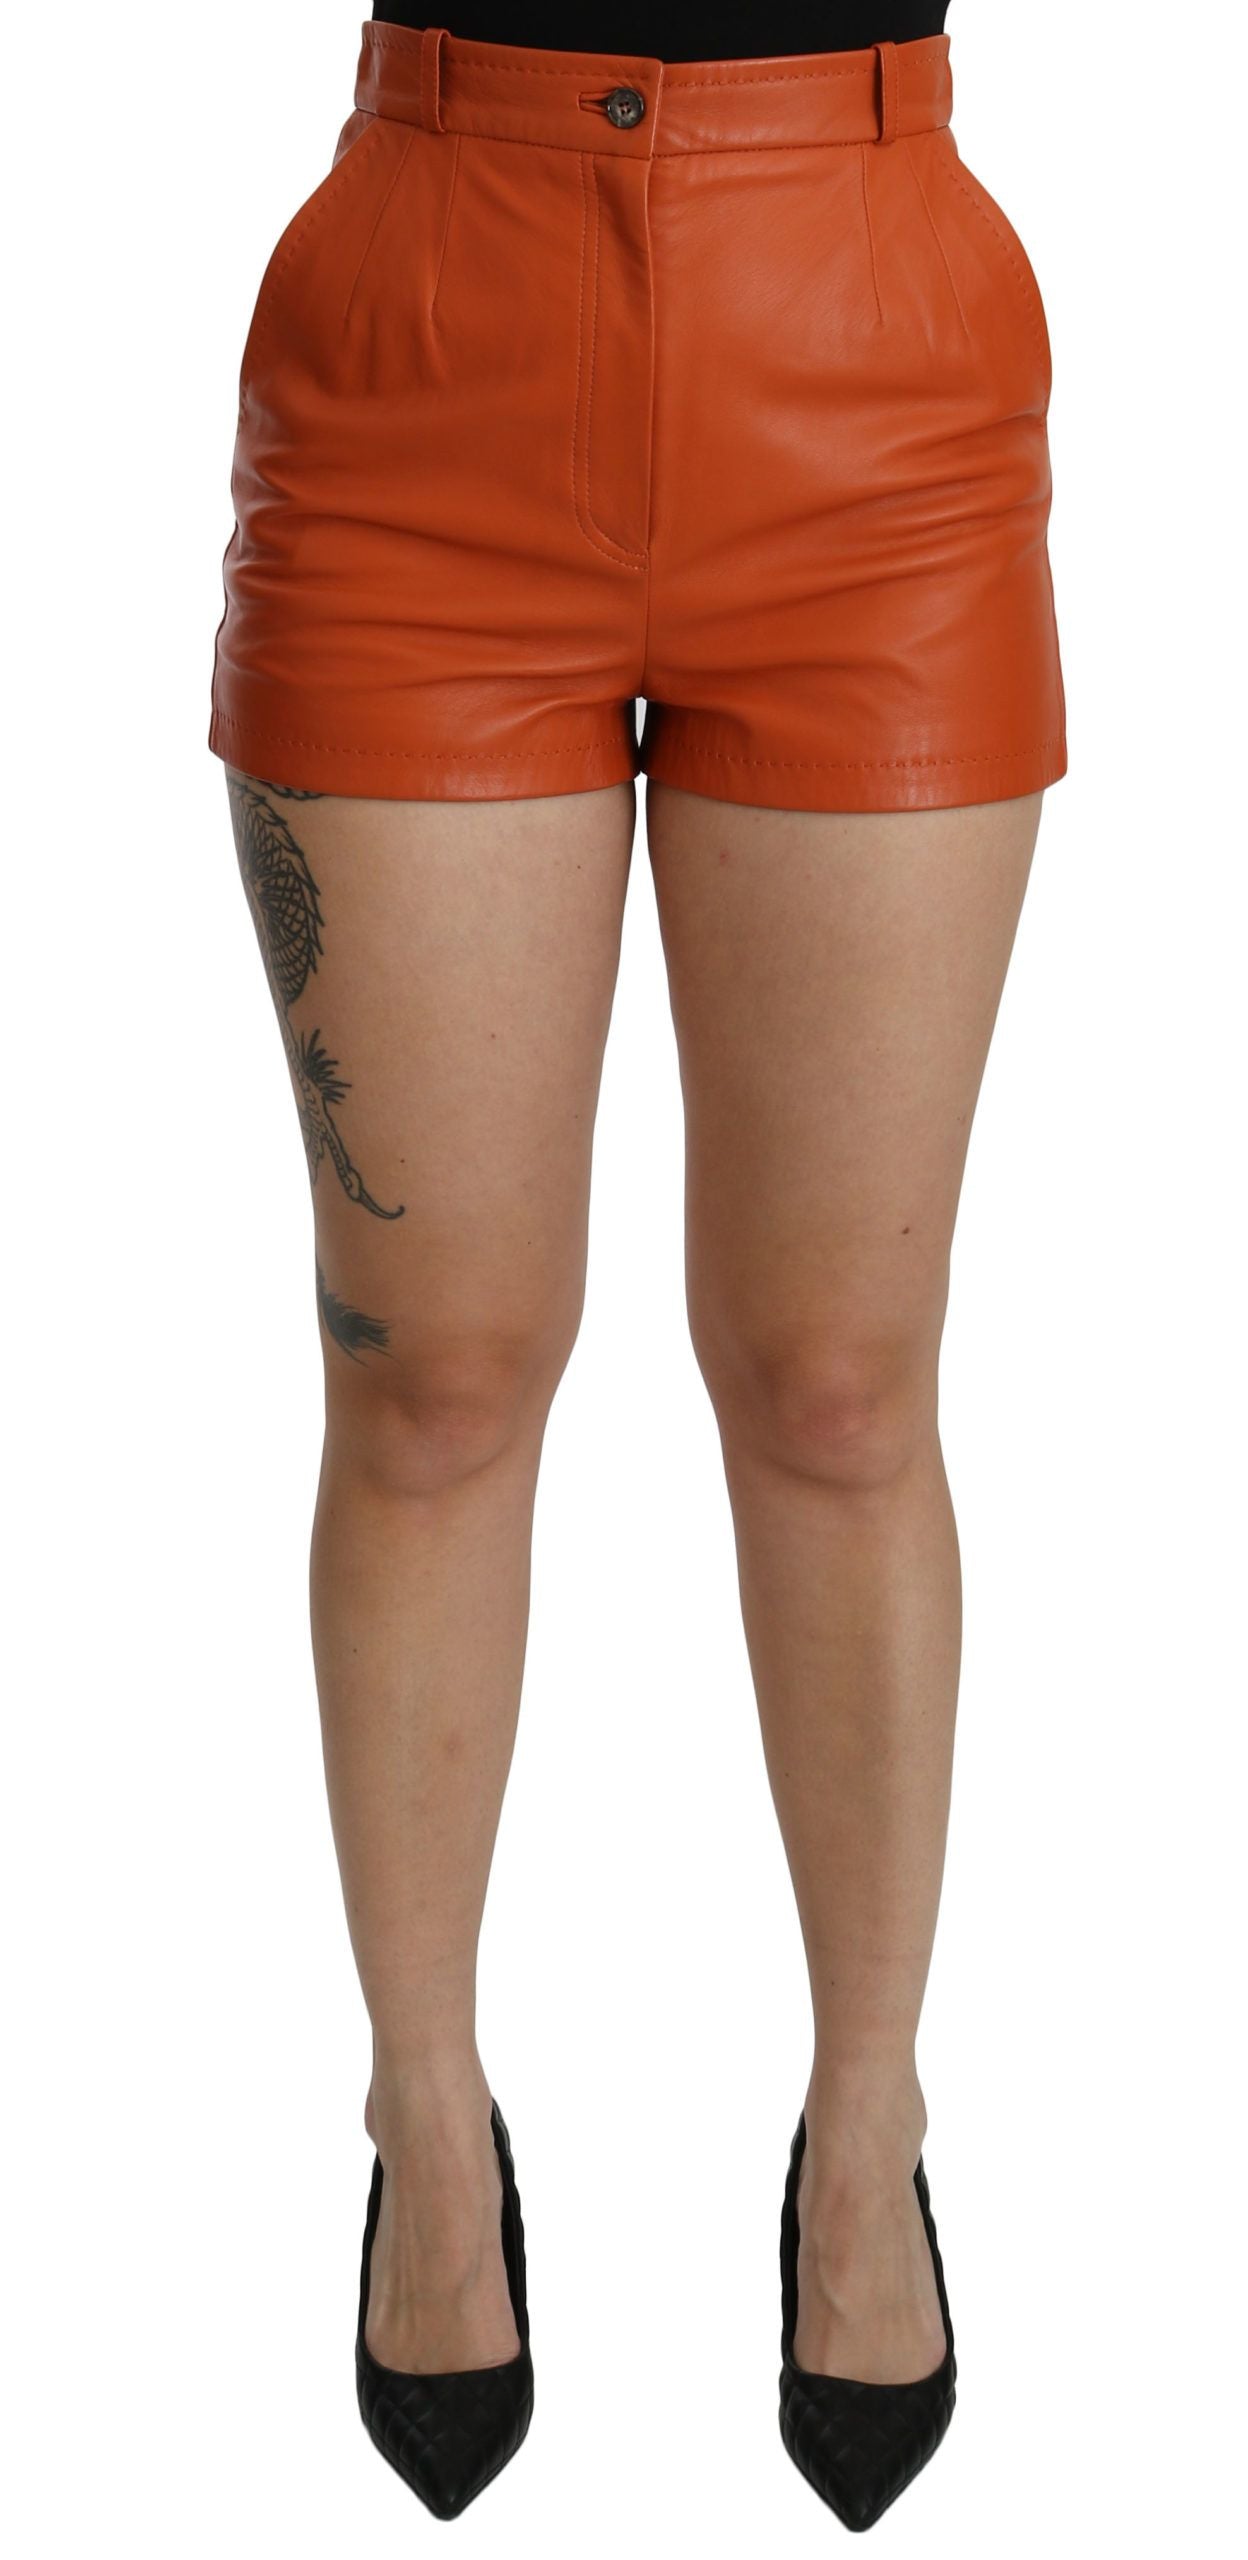 Dolce & Gabbana Orange Leather High Waist Hot Pants Shorts